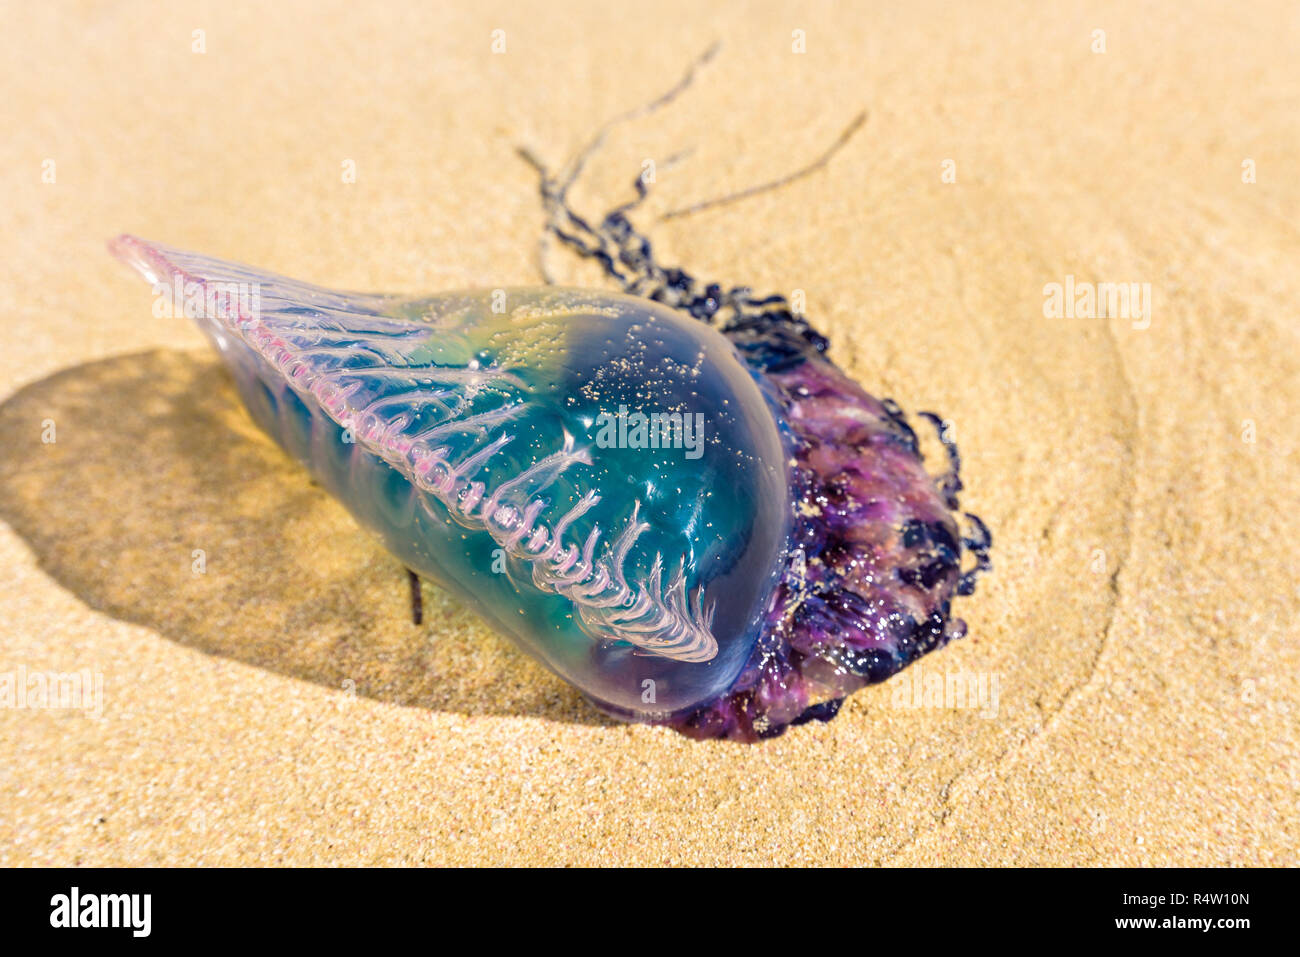 Homme portugais morts o' war jellyfish (Physalia physalis) échoués sur une plage de sable. Bleue sur le sable en Playas del Este, Cuba Banque D'Images